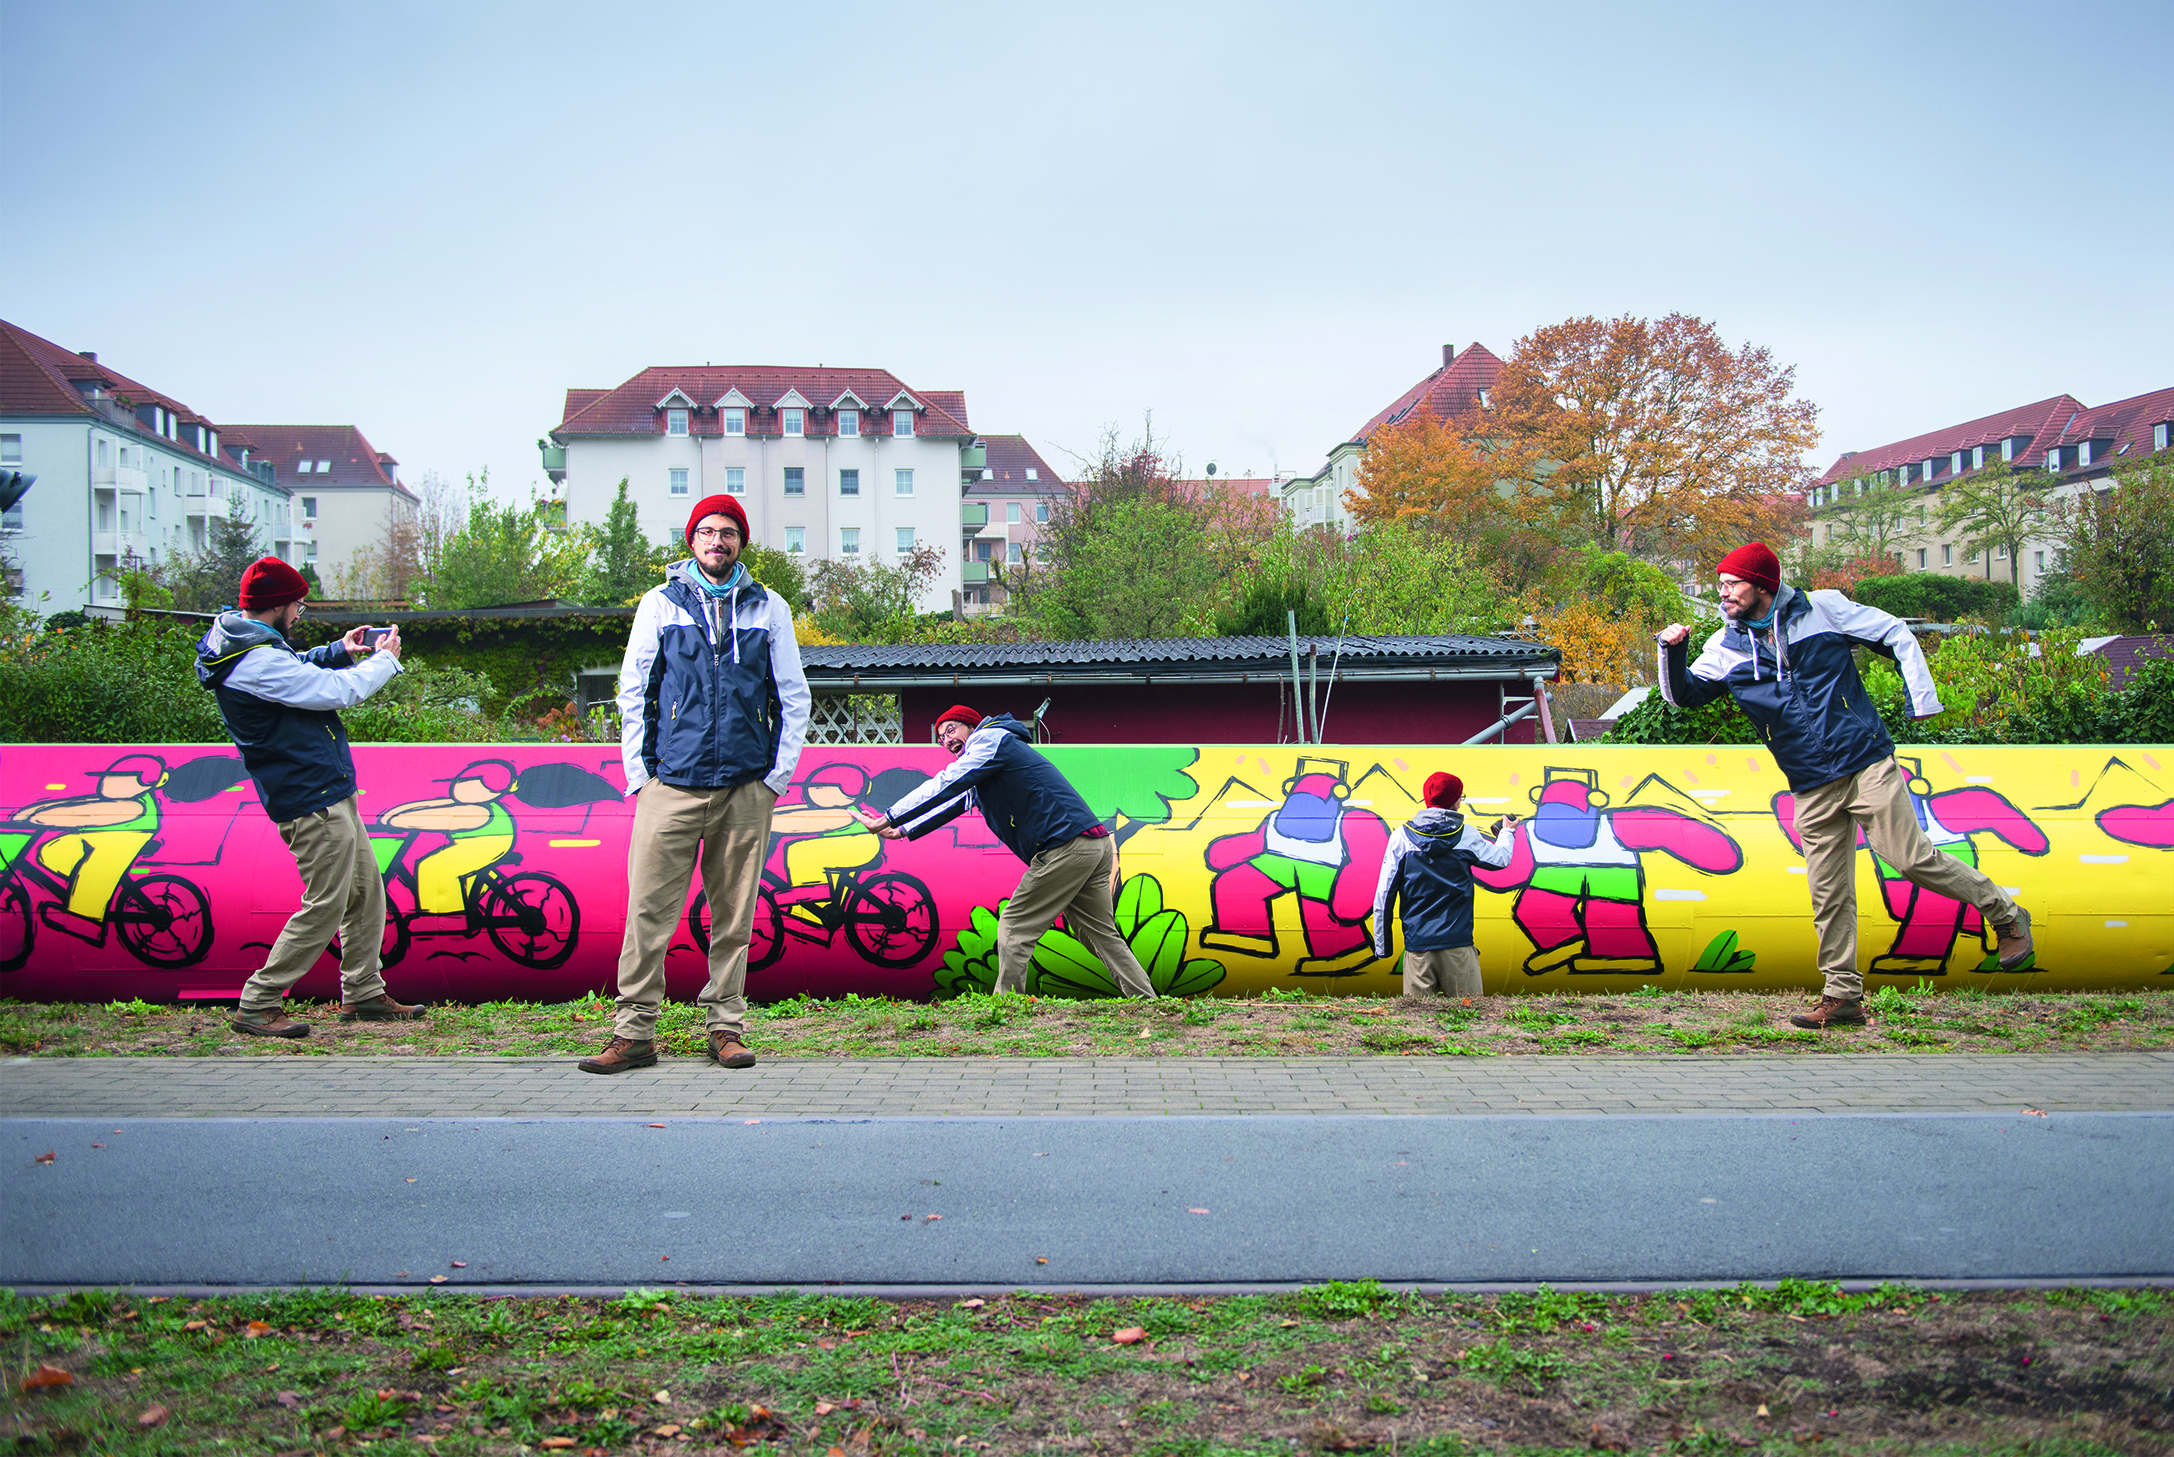 Farbenfroh und voller Bewegung setzt Graffitikünstler Yves Paradis seine Ideen um. Das Zwiegespräch mit den Betrachtern ist dabei ausdrücklich gewünscht.